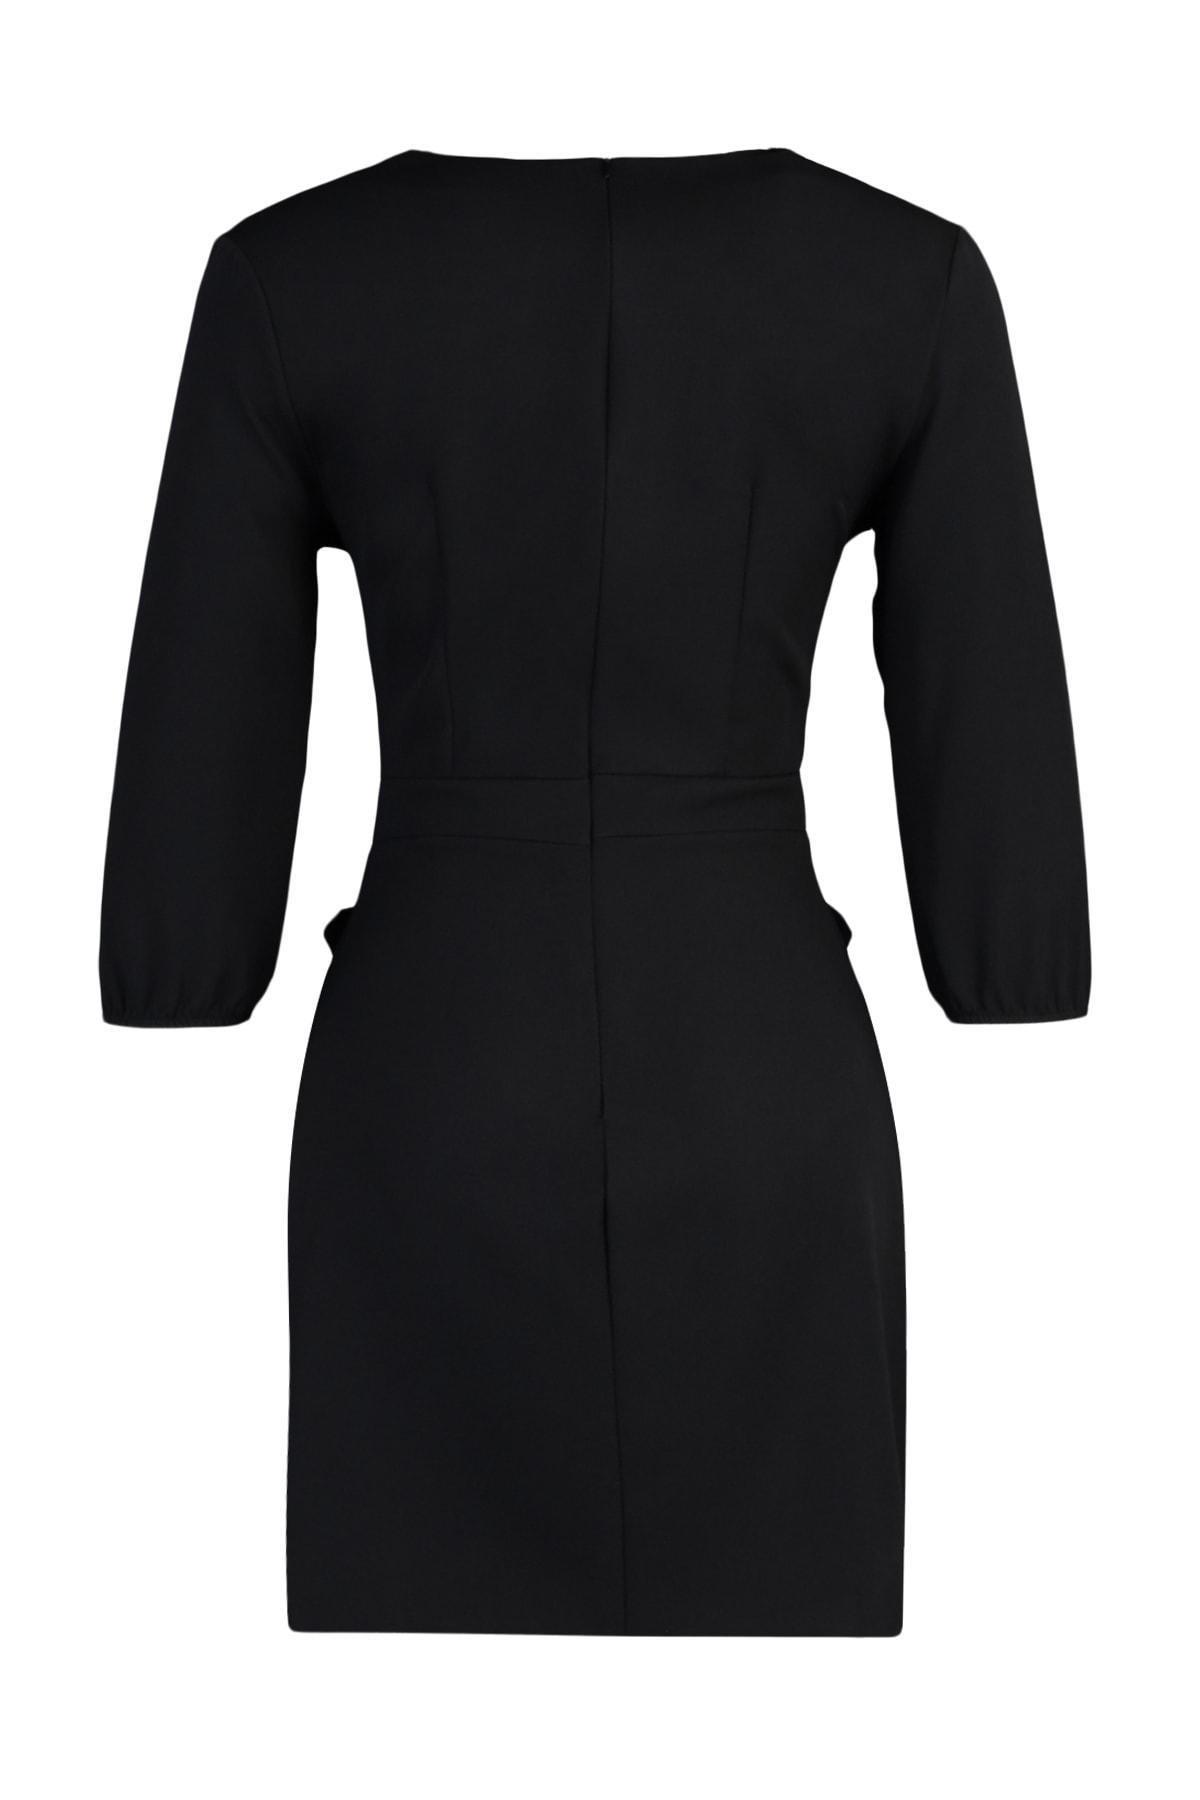 Trendyol - Black Bodycon V-Neck Mini Dress